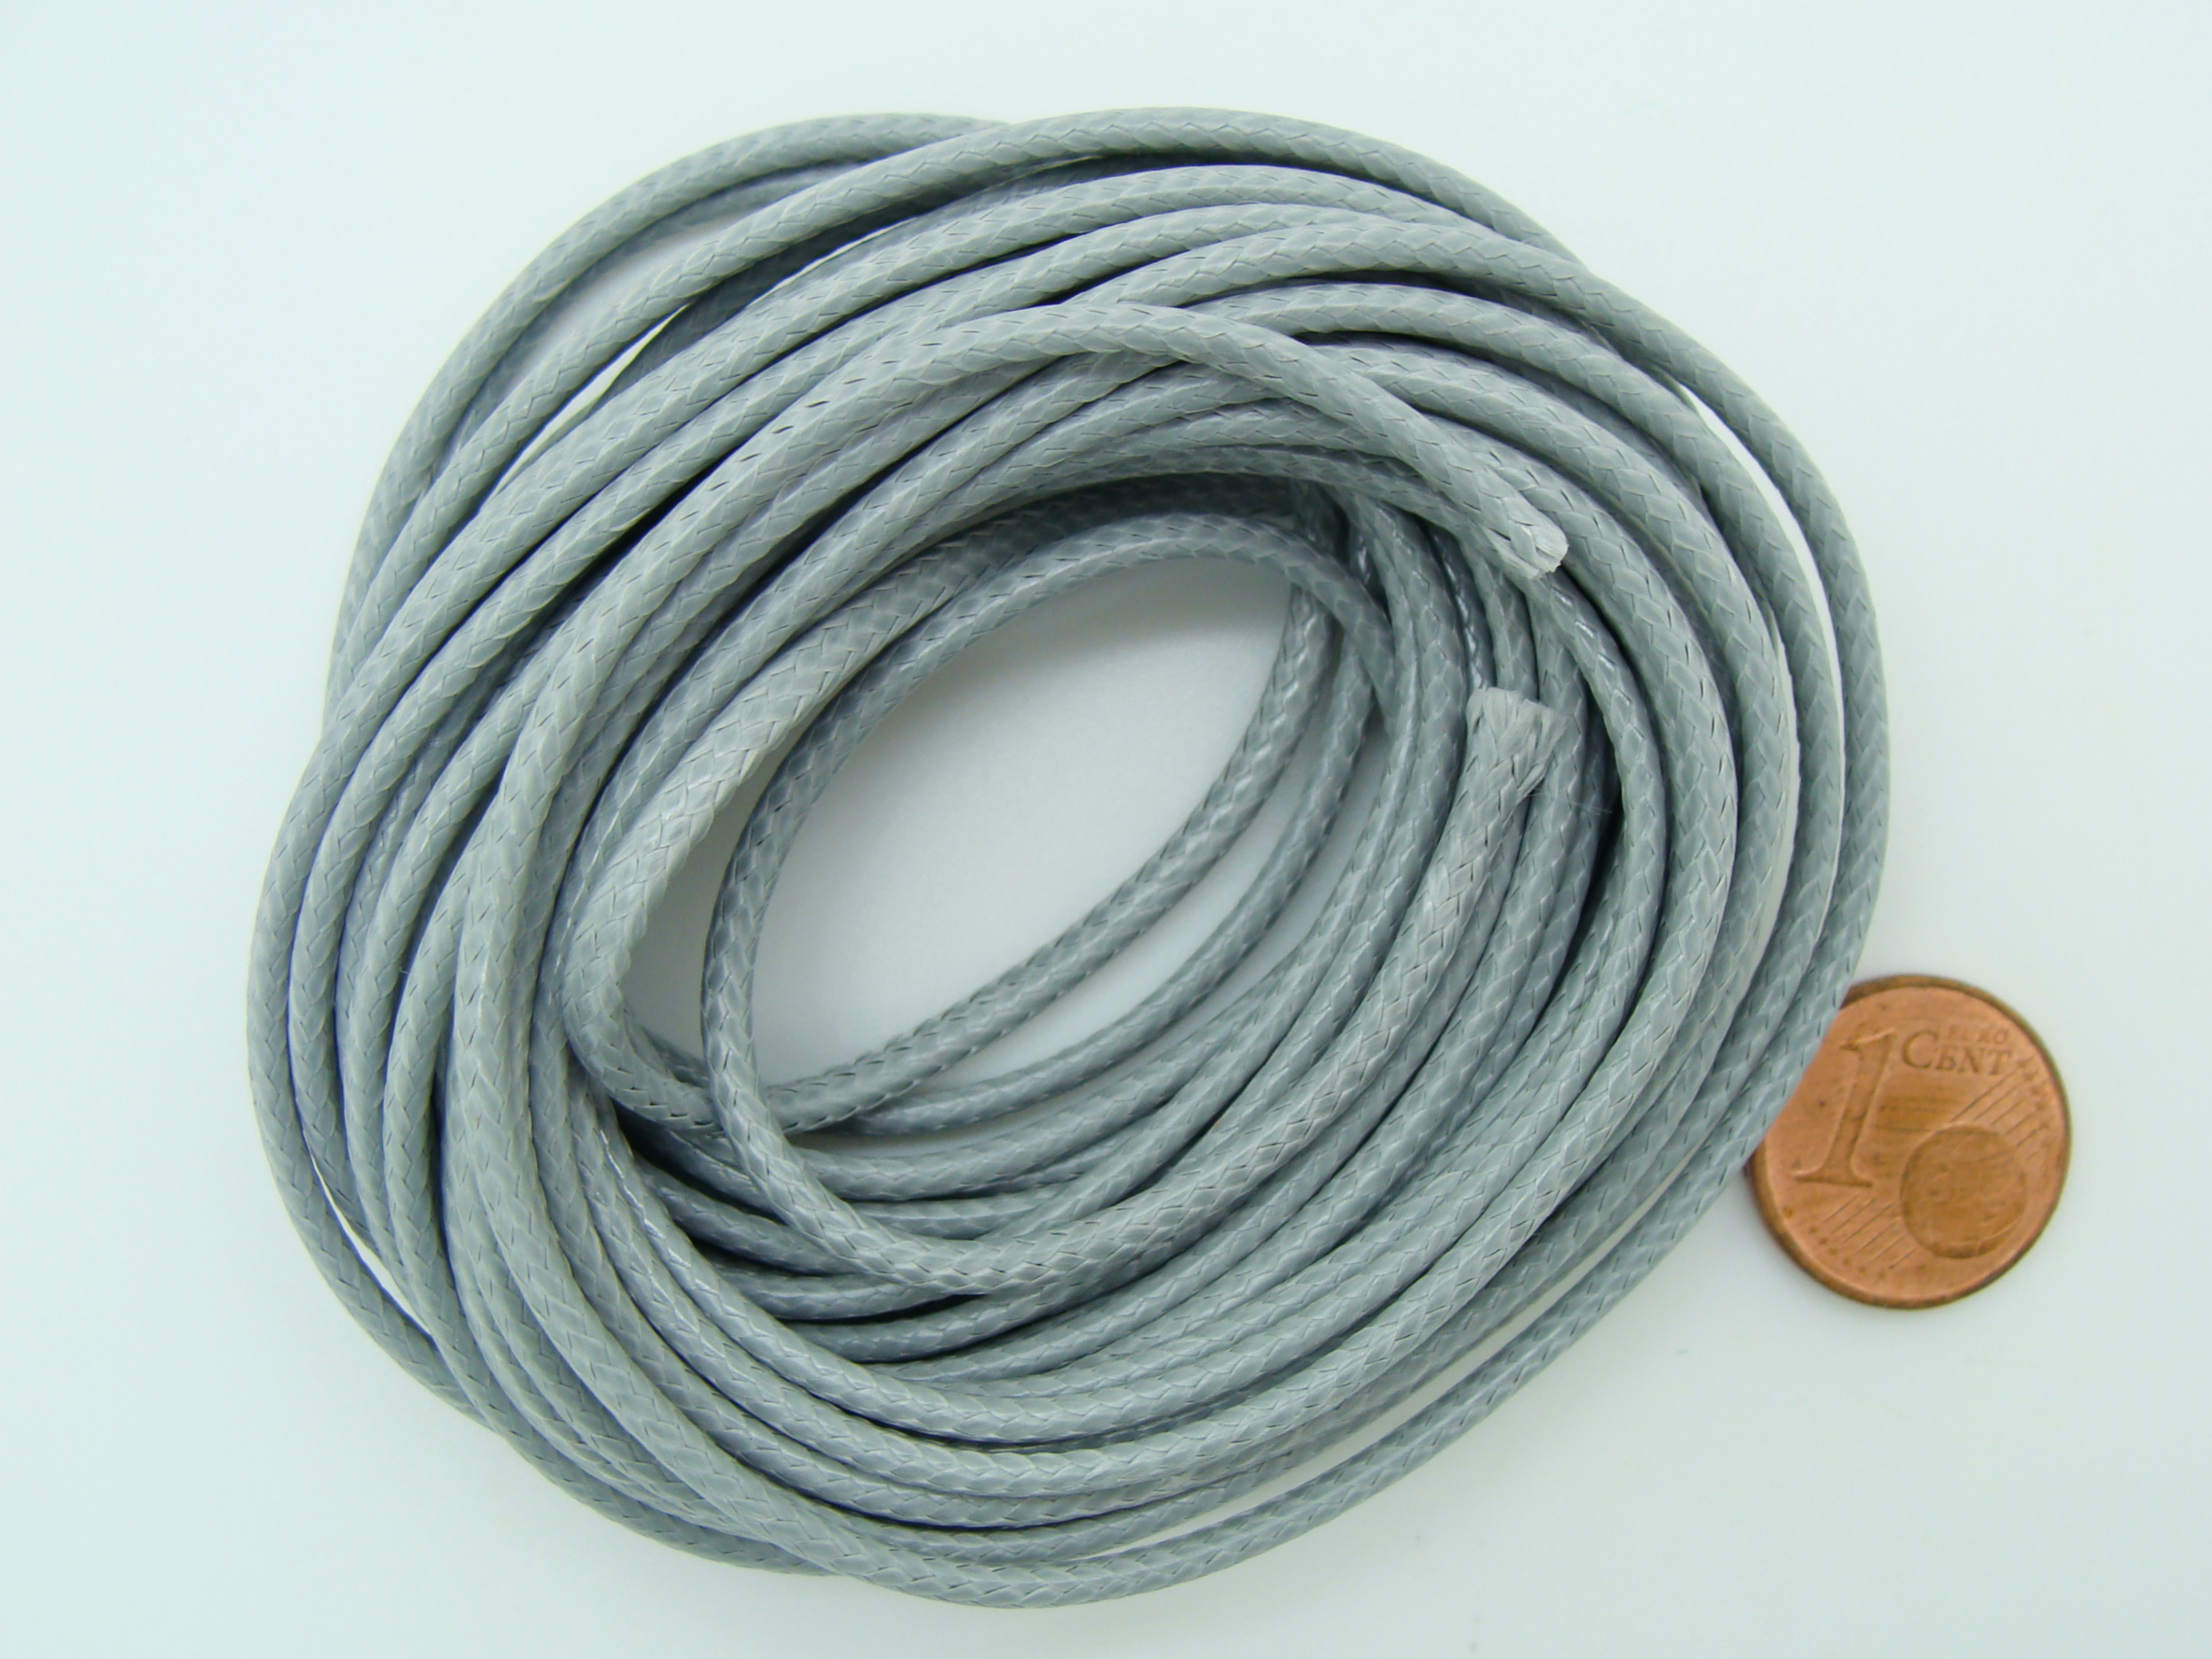 fil polyester 2mm gris cordon